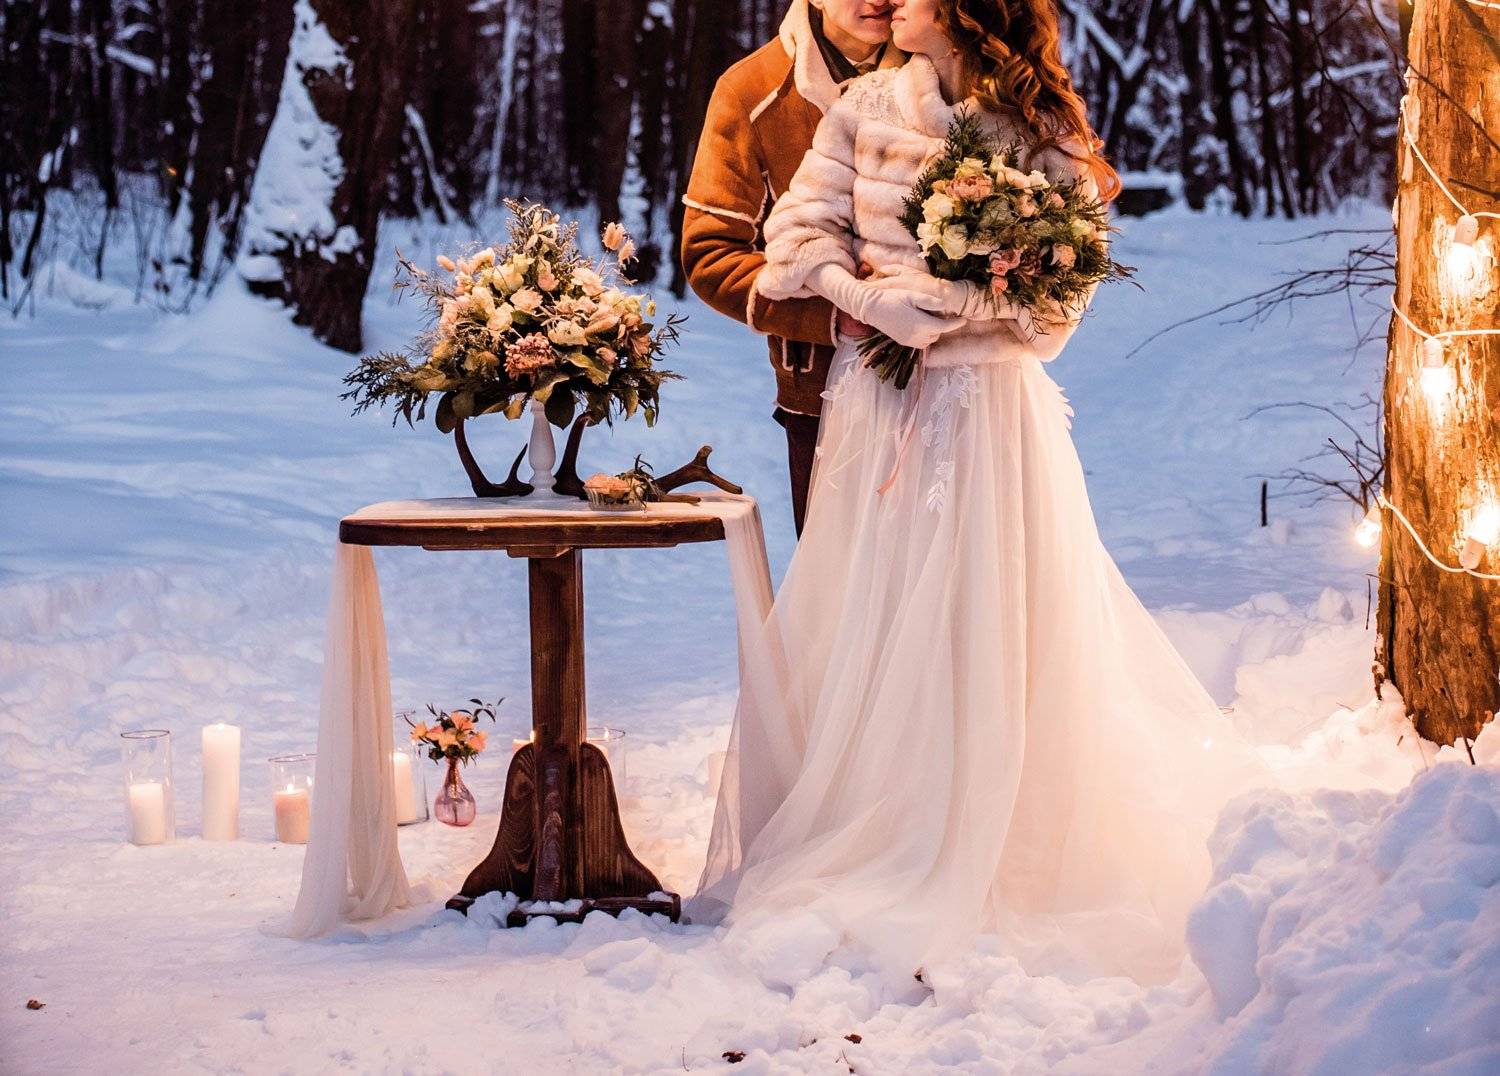 Свадьба зимой имеет свои плюсы и минусы, 17 примет